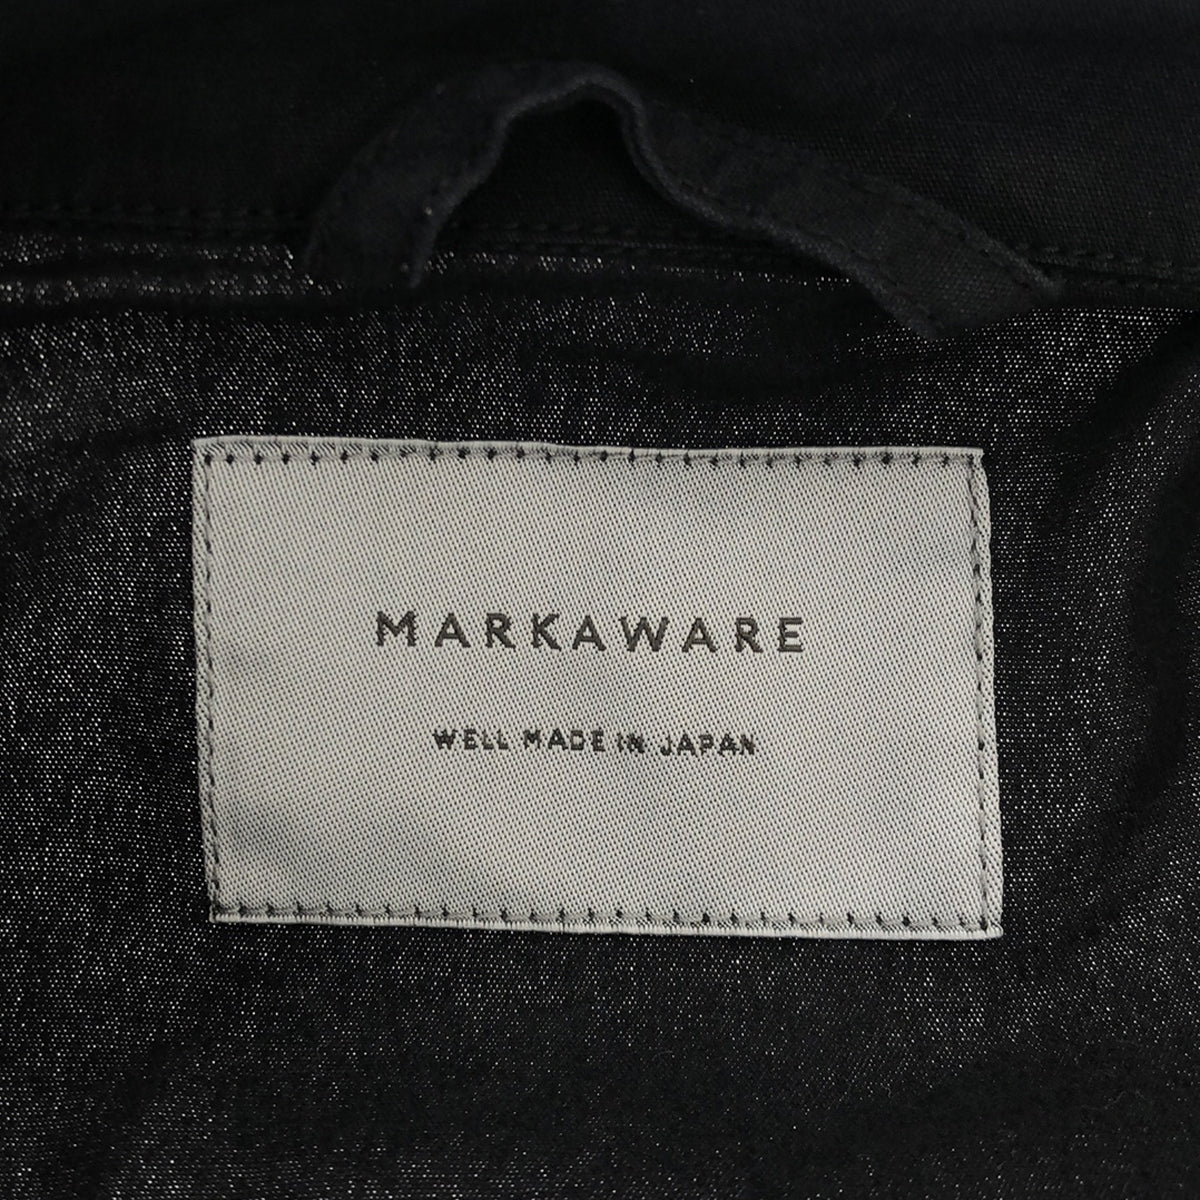 MARKAWARE / マーカウェア | ジャングルファティーグジャケット | 2 | メンズ